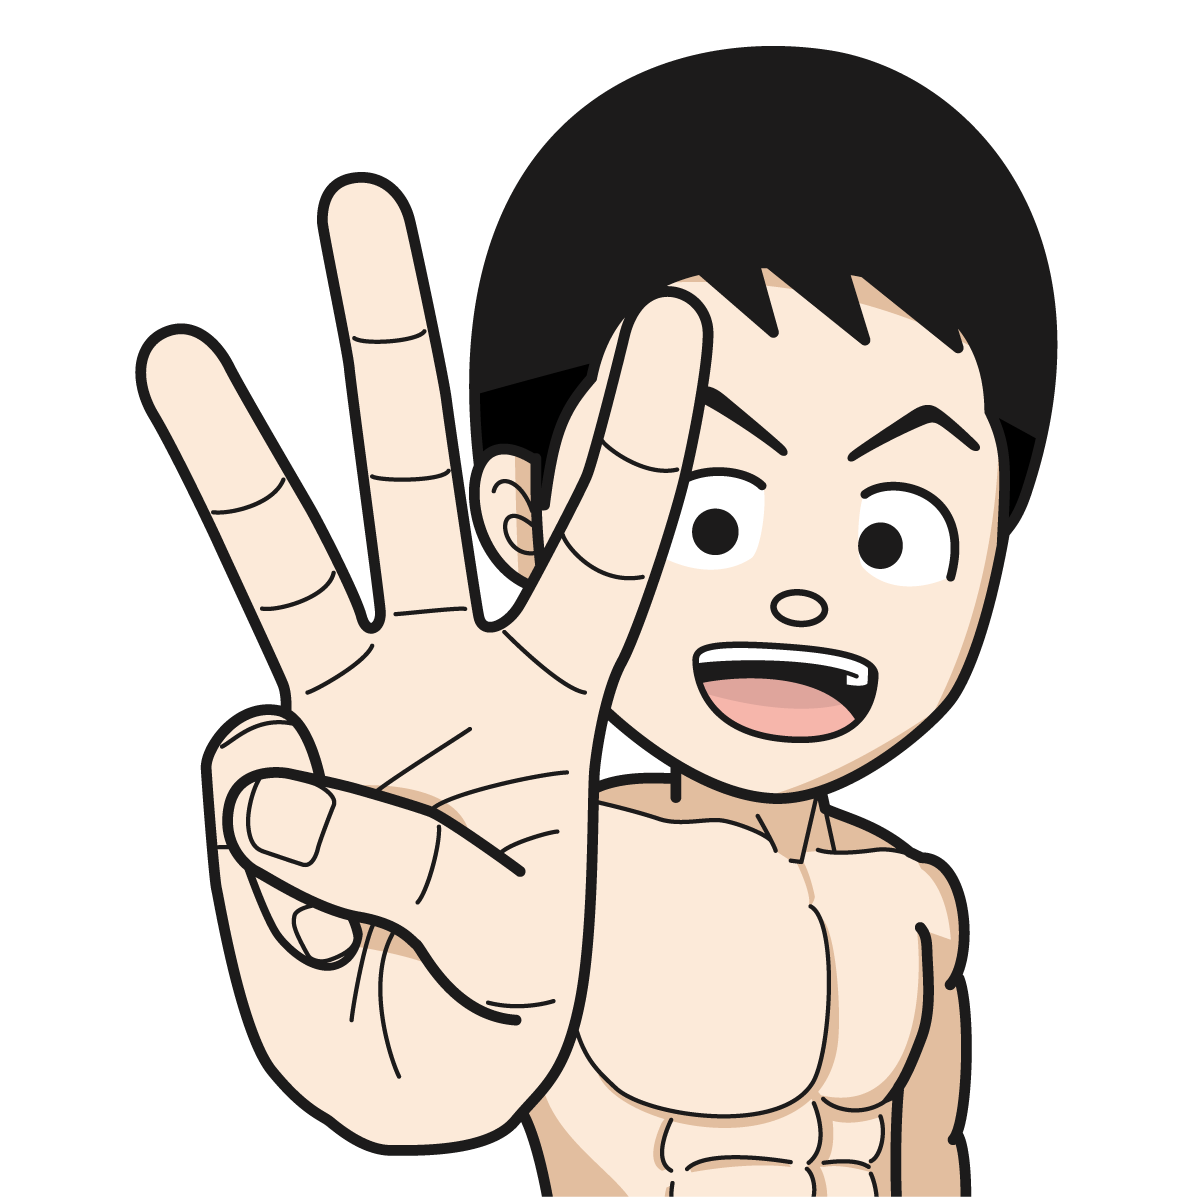 指で 3 を作るマッチョな裸姿の男性hand 18 イラスト Mido Kichi